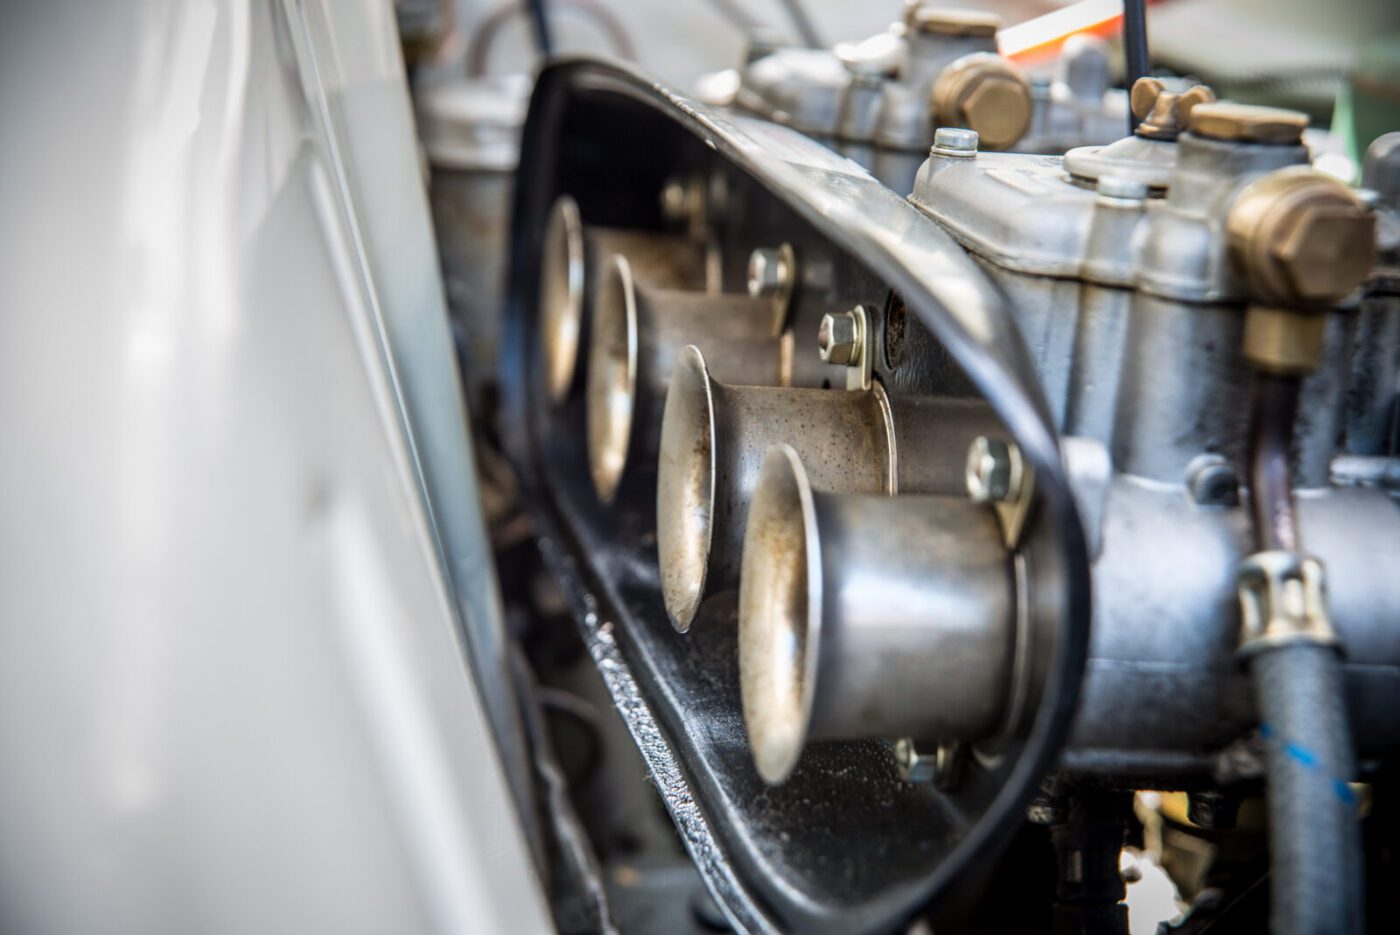 Lotus Cortina SE engine detail